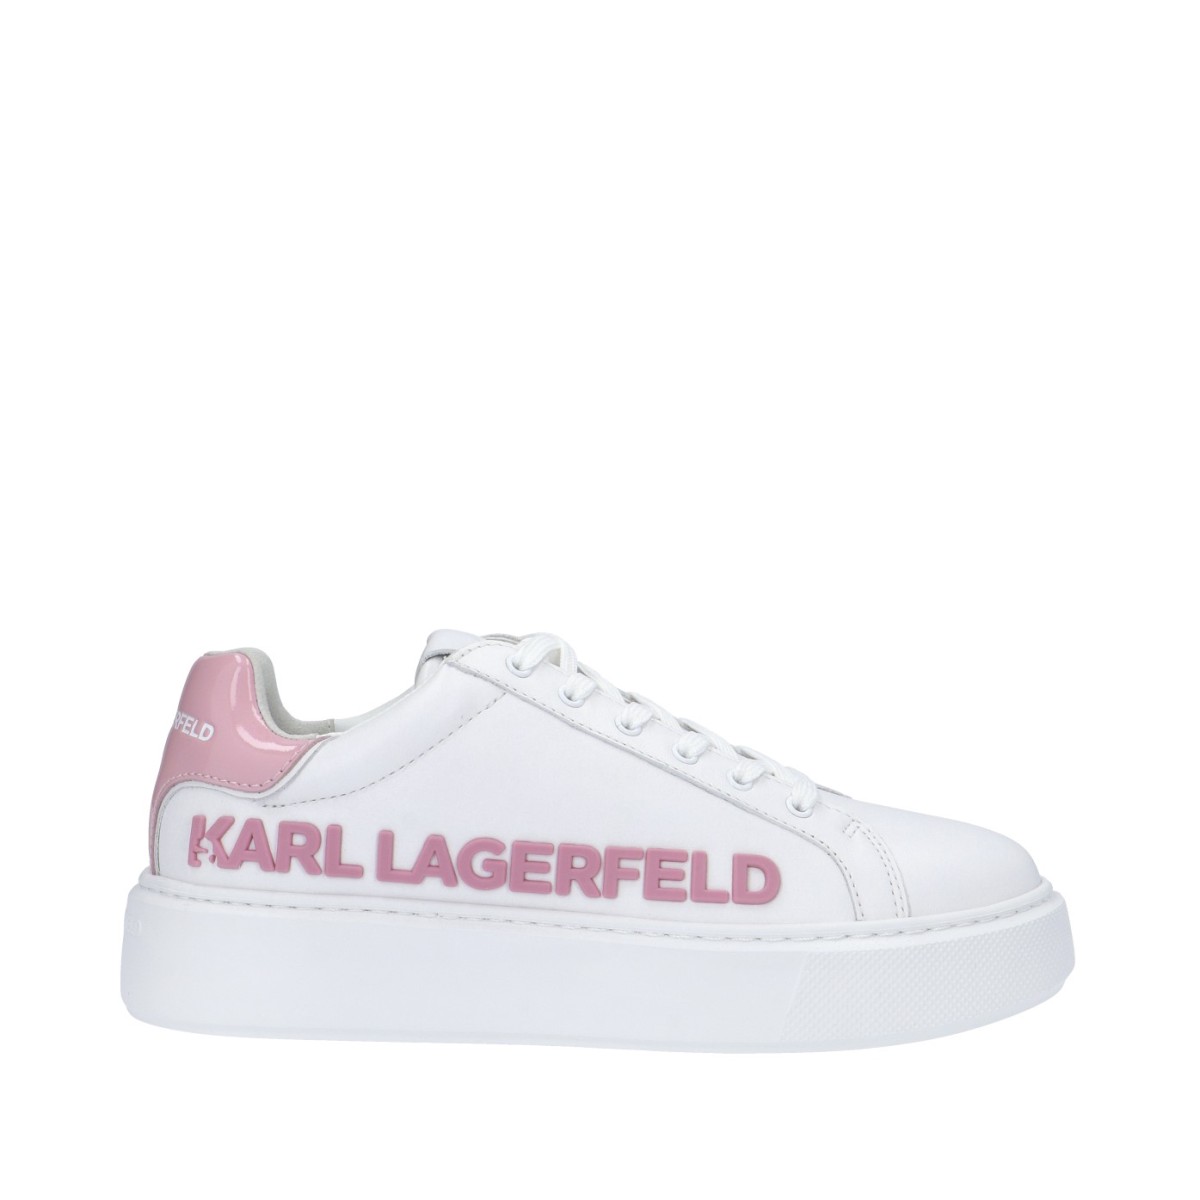 Karl lagerfeld Sneaker...